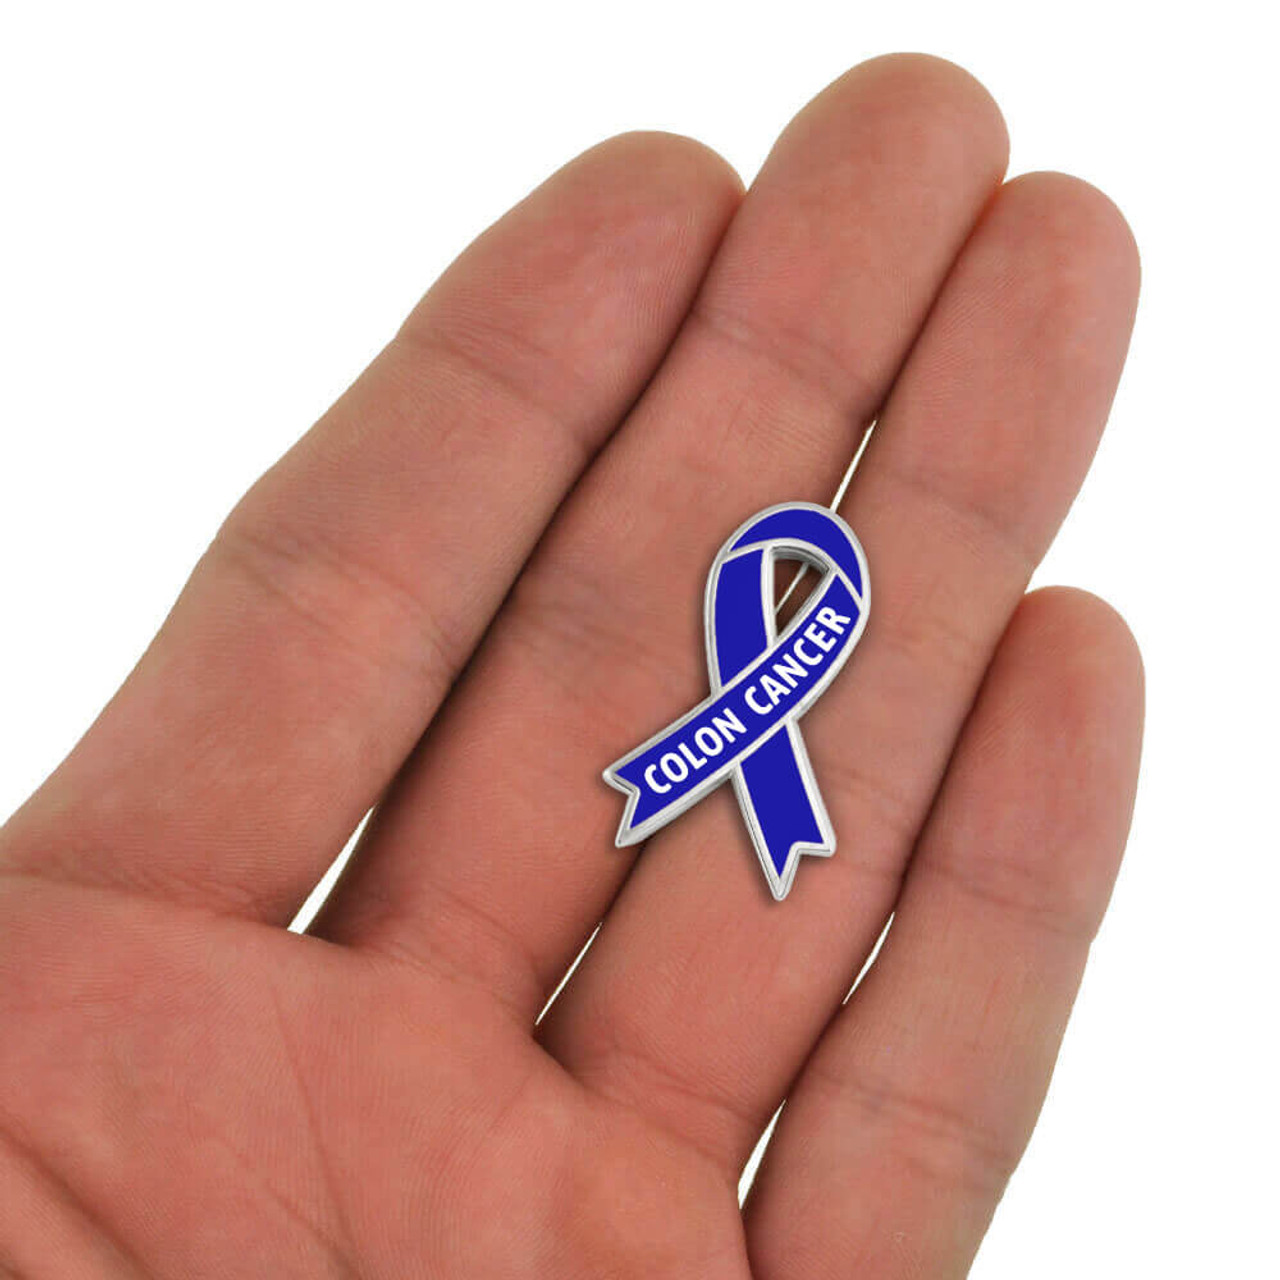 Awareness Ribbon Pin Colon Cancer Pinmart